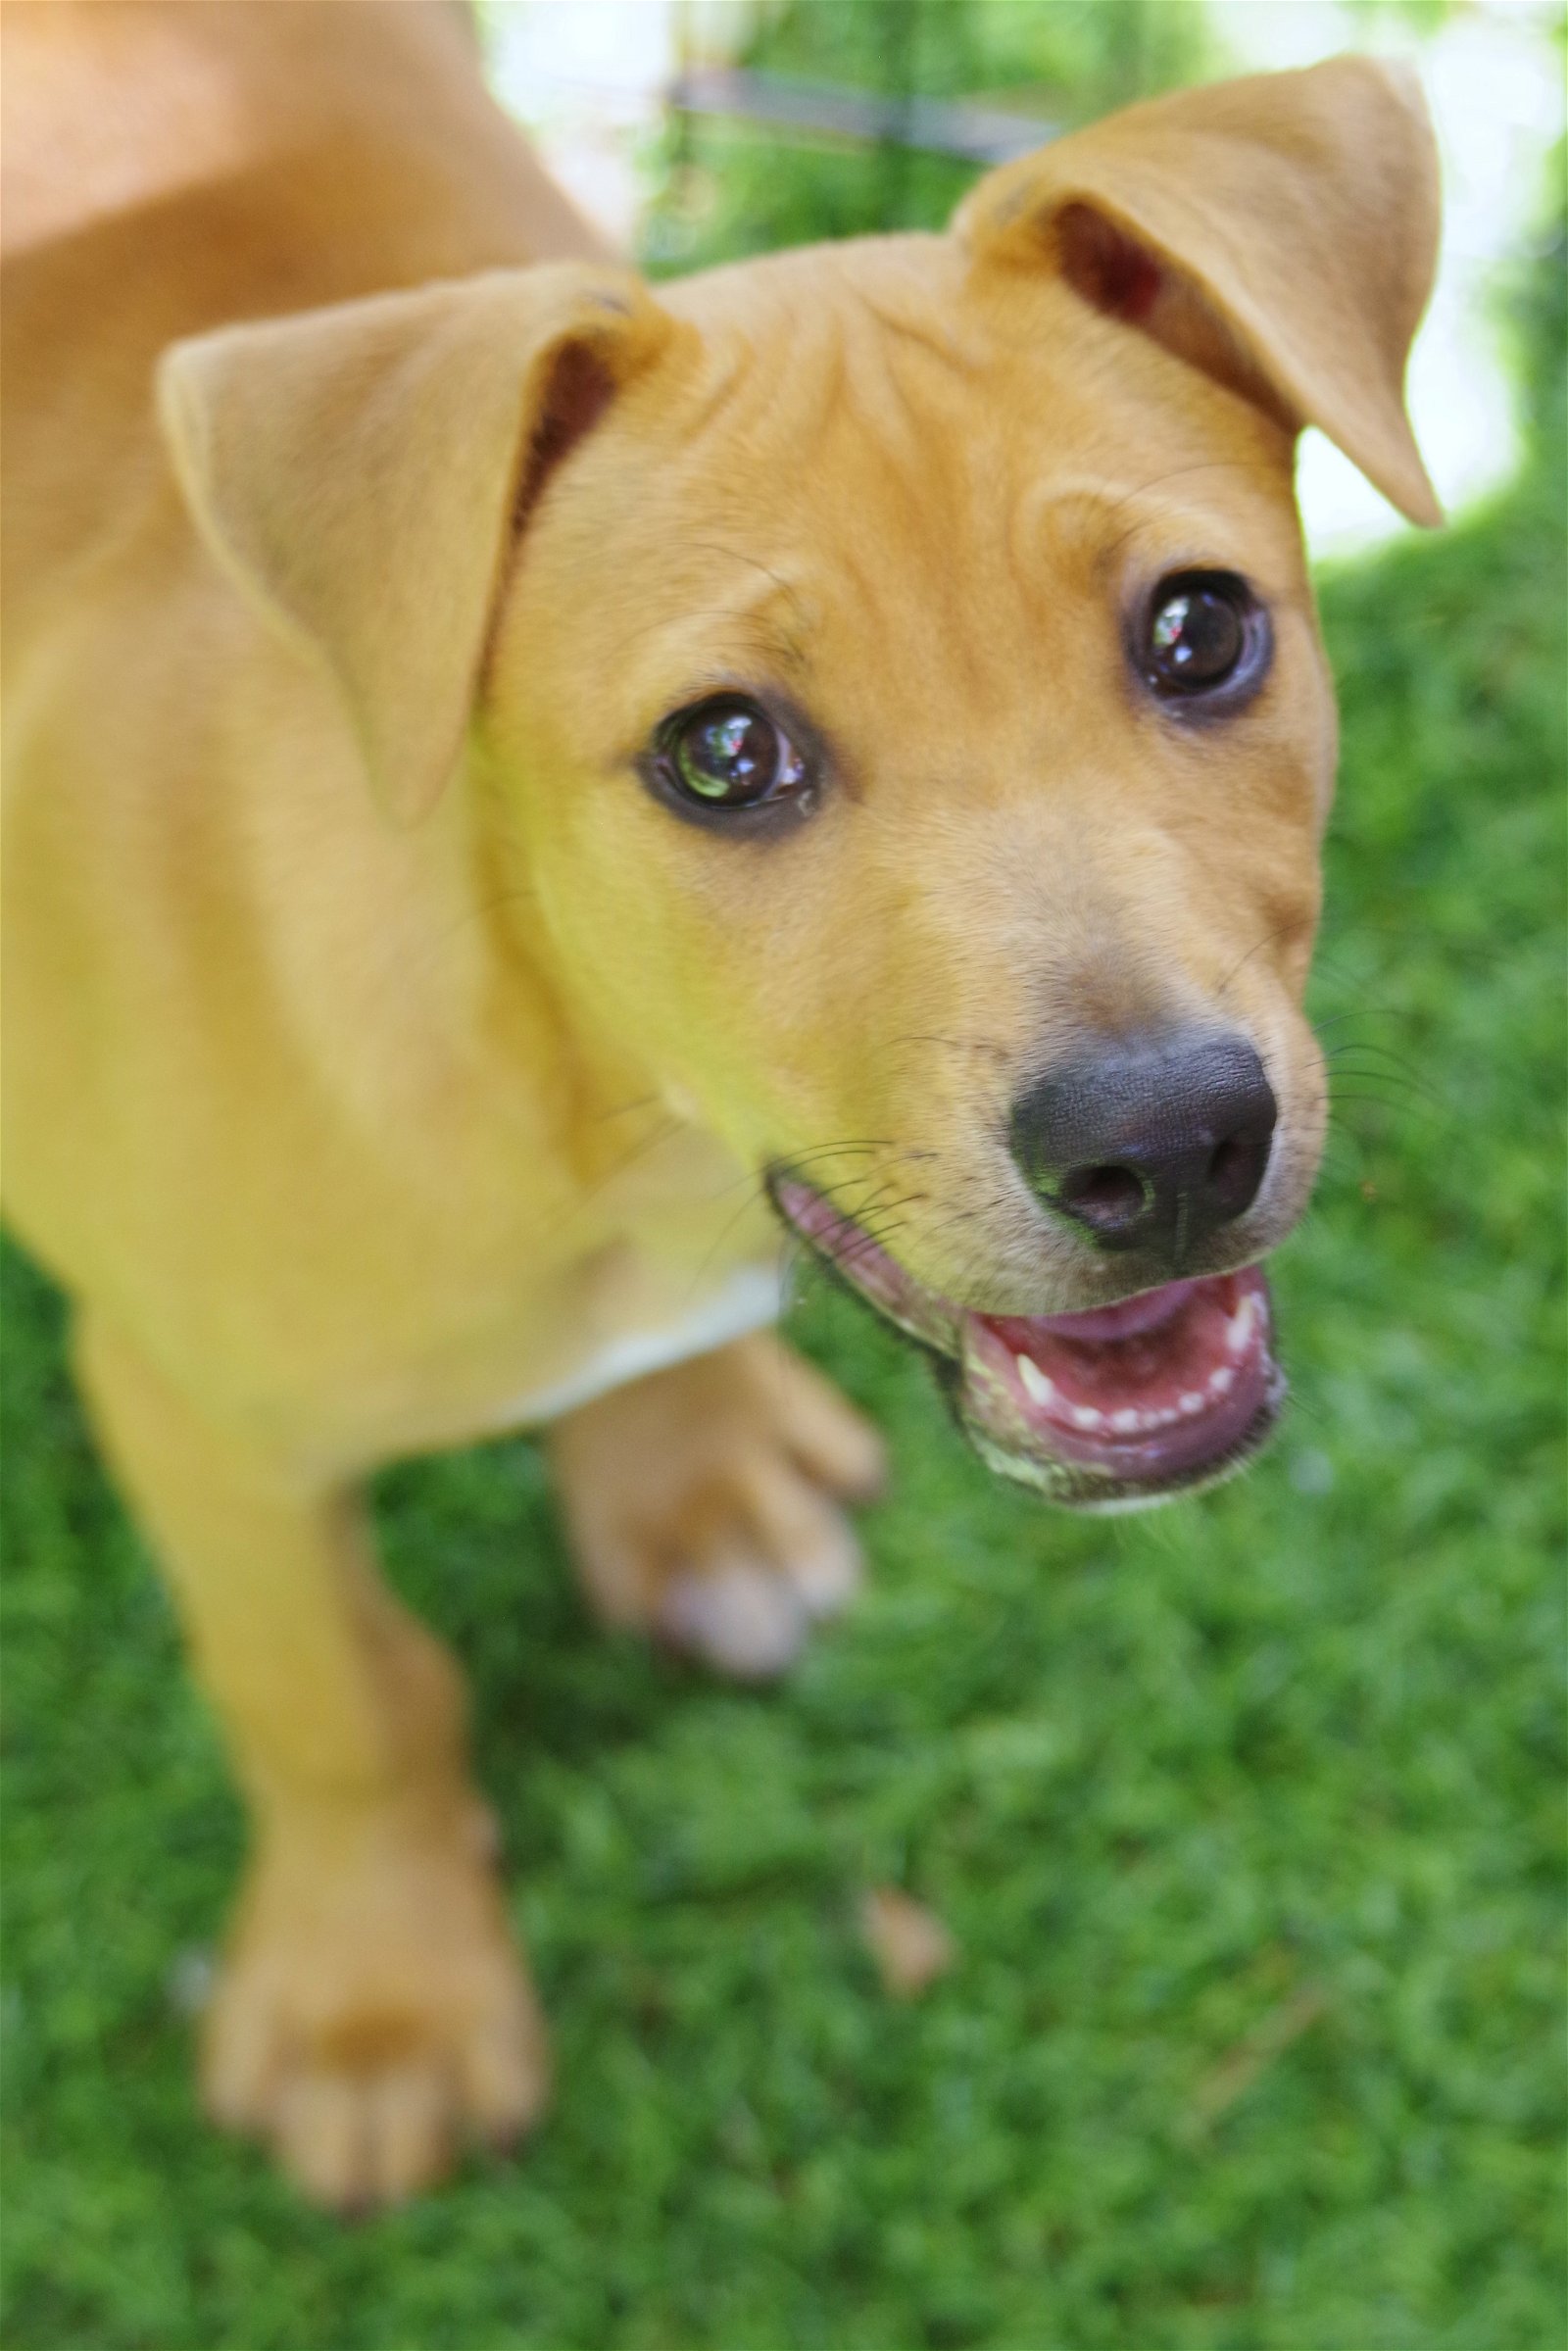 adoptable Dog in Miami, FL named Baby Alice